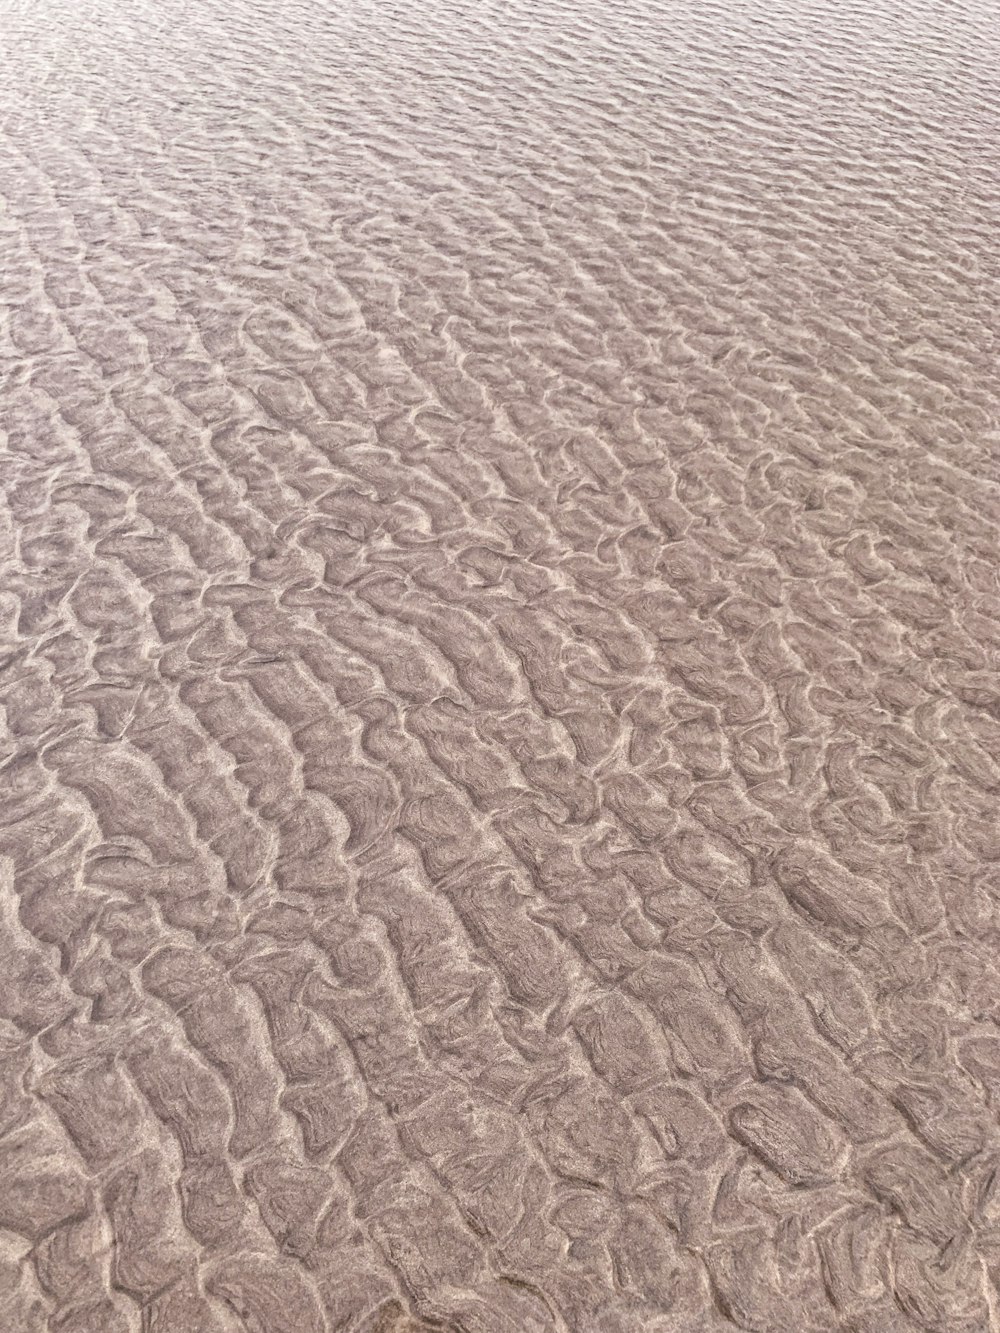 brauner Sand tagsüber